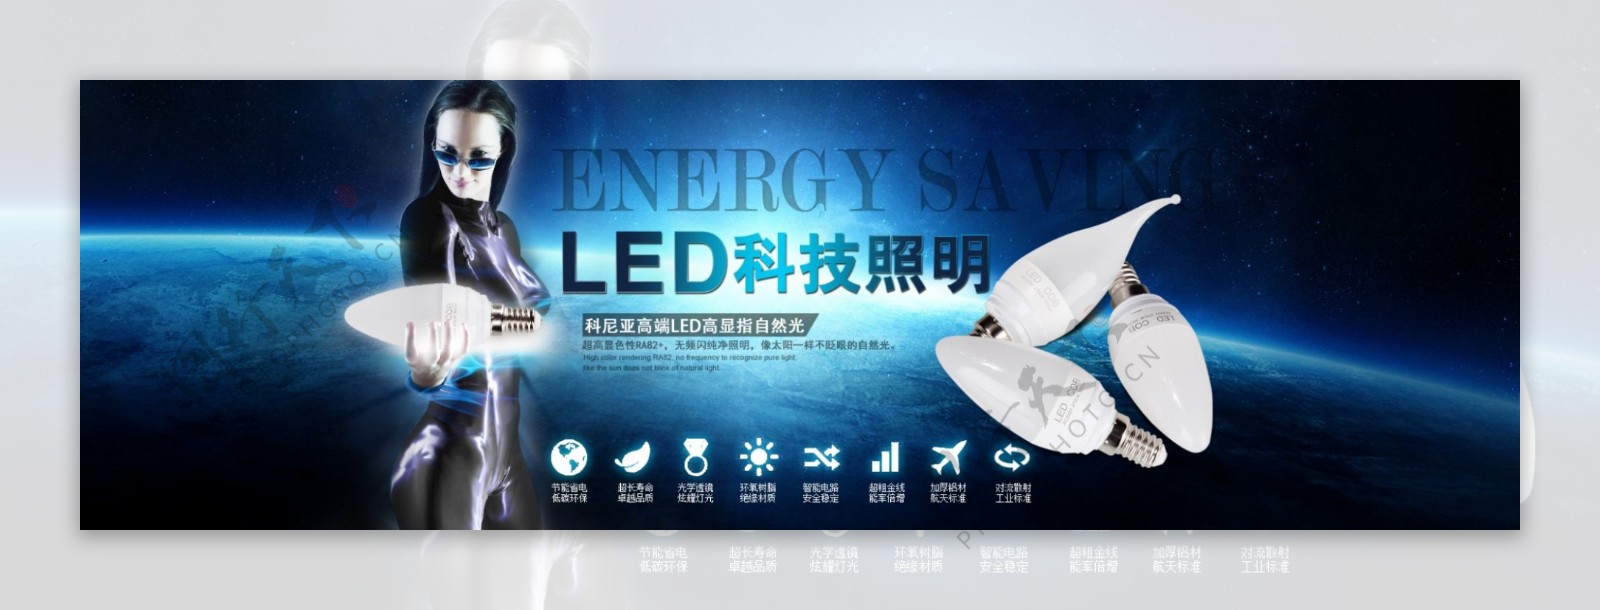 LED科技照明淘宝首页海报绿色节能